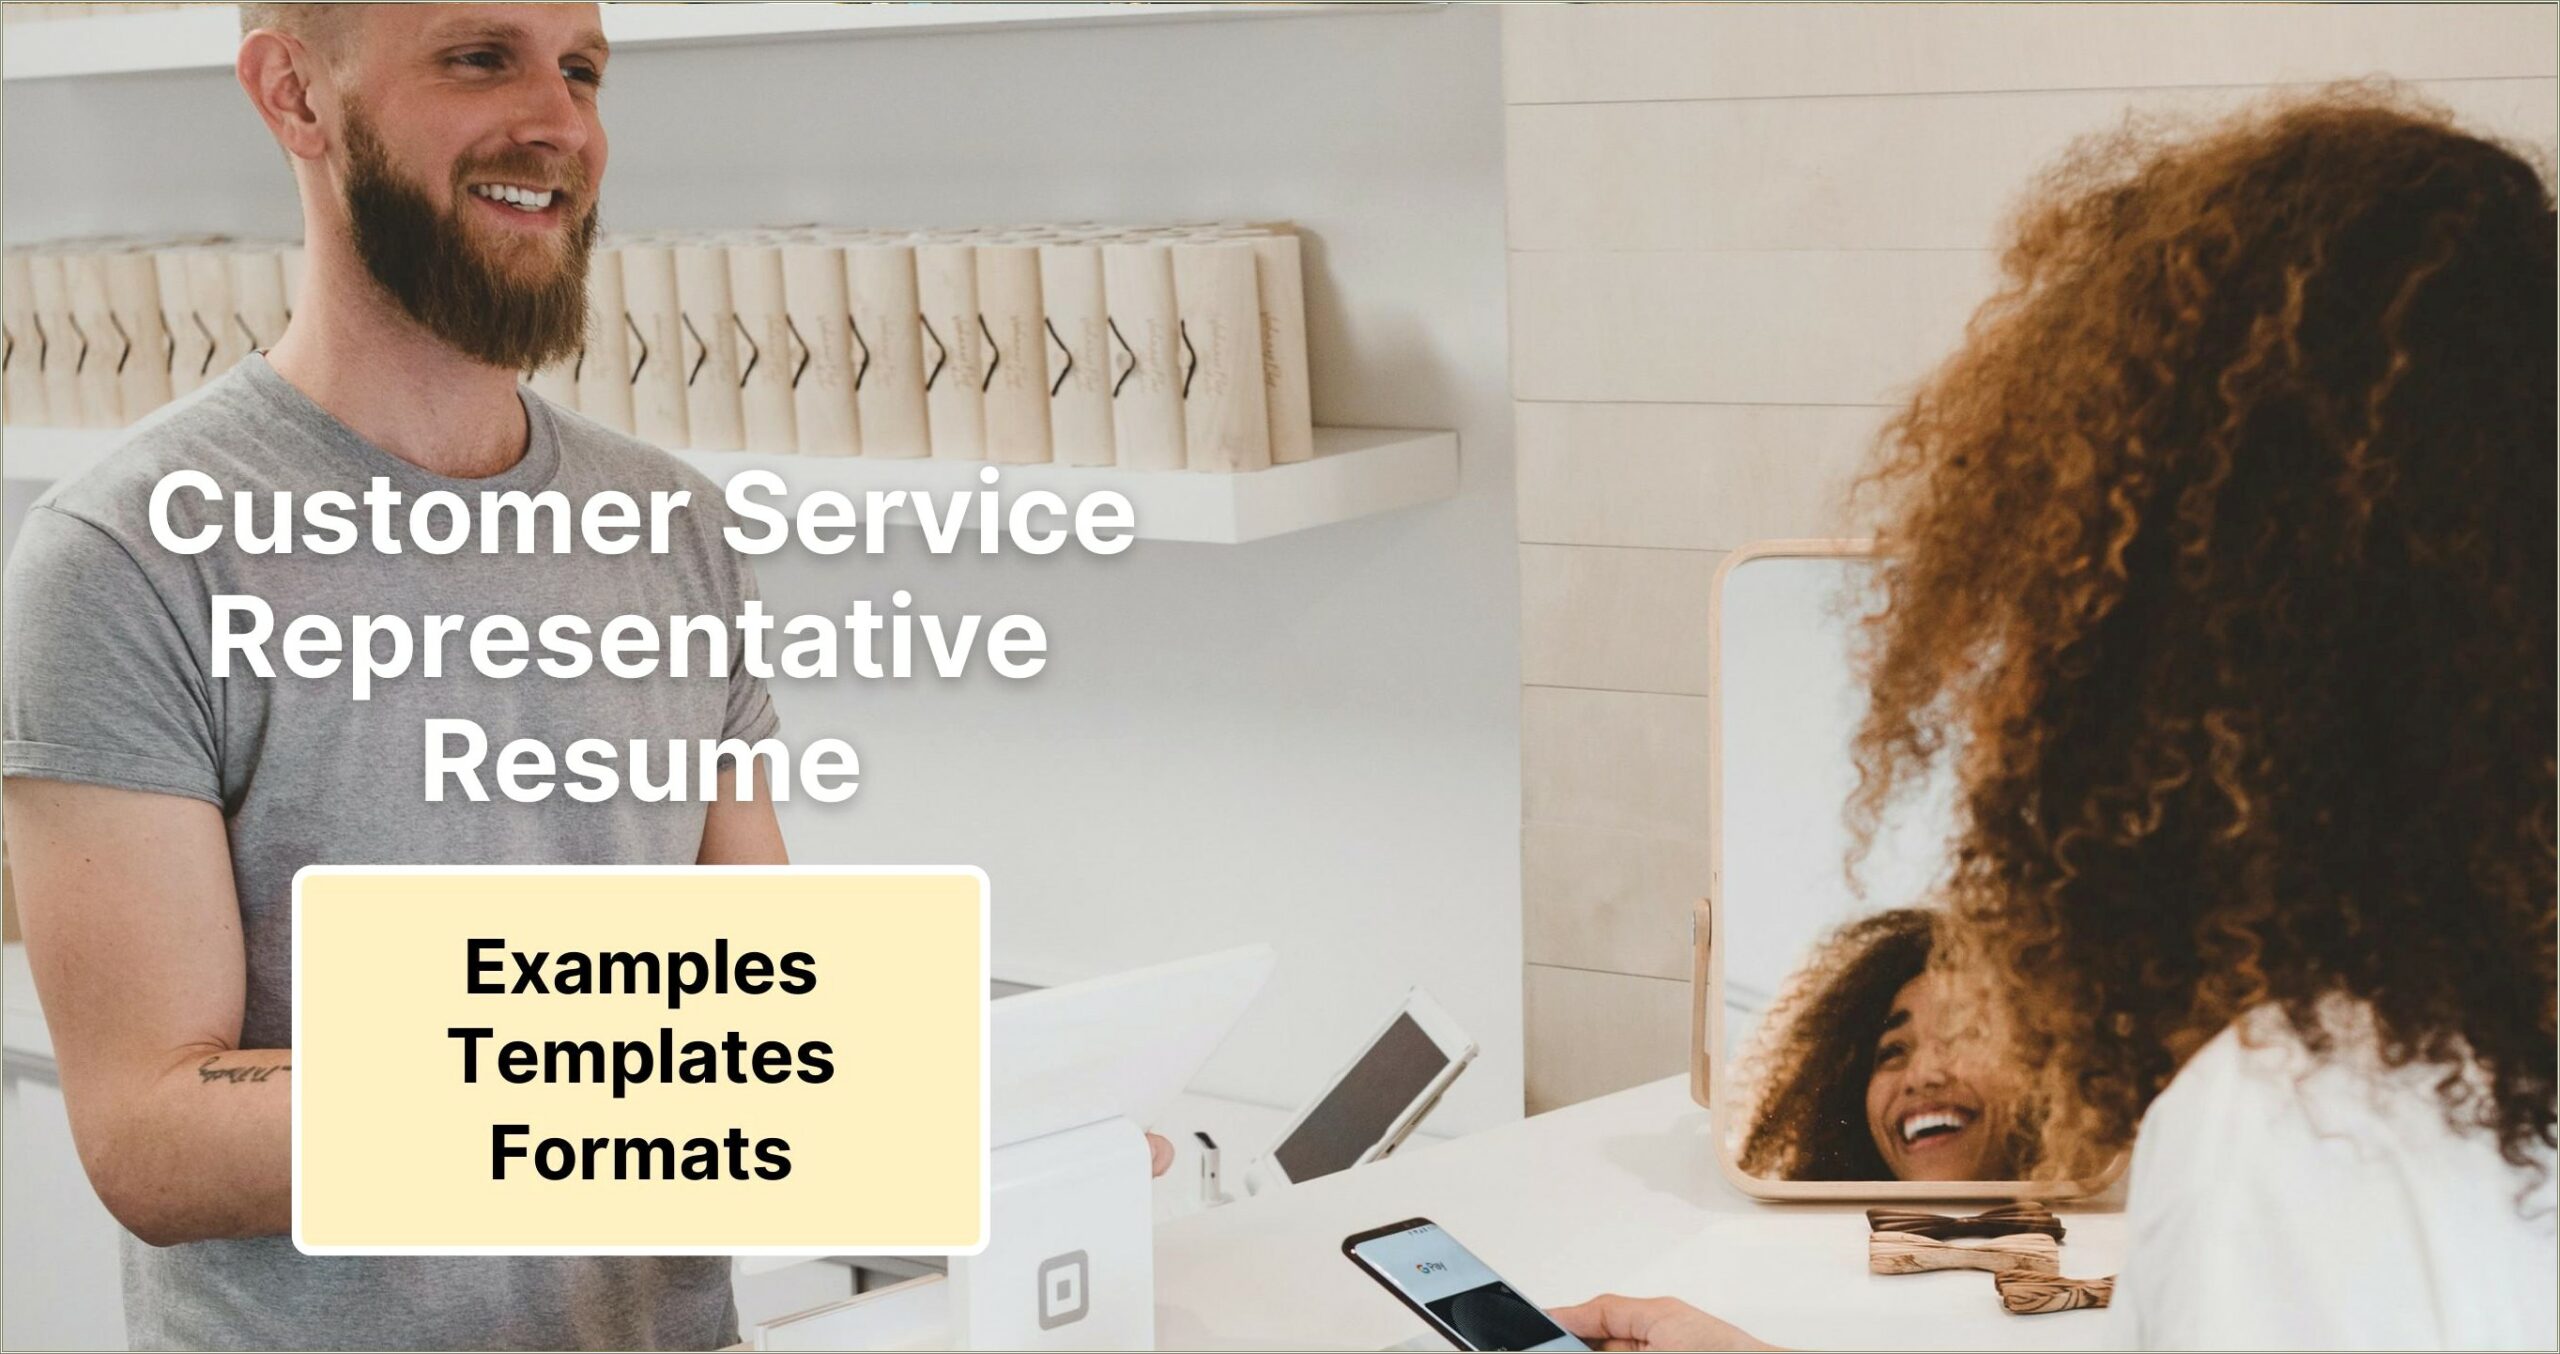 Customer Service Representative Resume Objective Samples